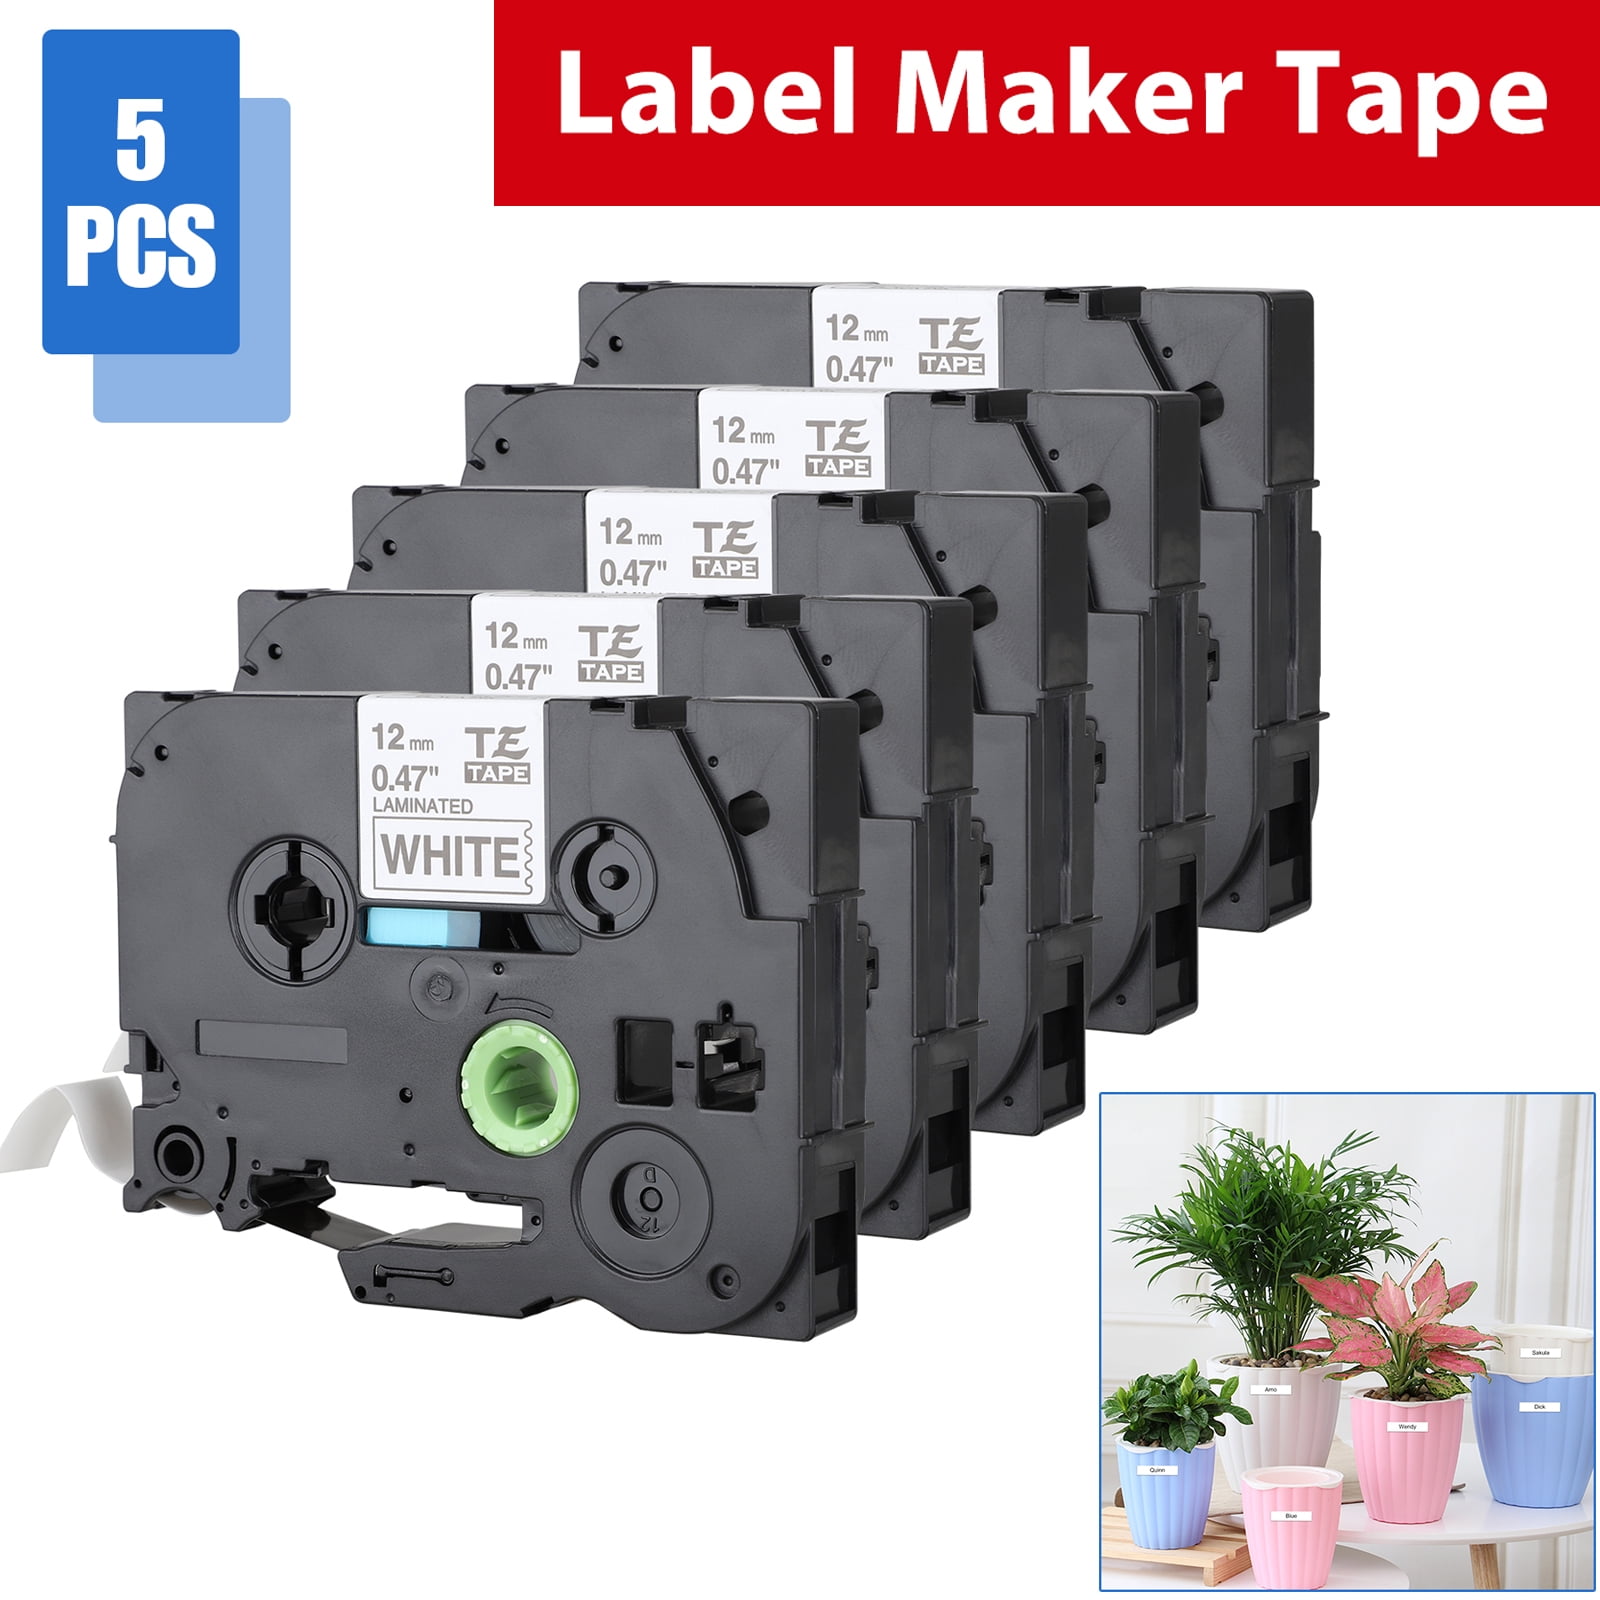 5PCS Compatible Label Maker Tape 12mm for Brother P-Touch TZ-231 TZe-231 PT-D210 